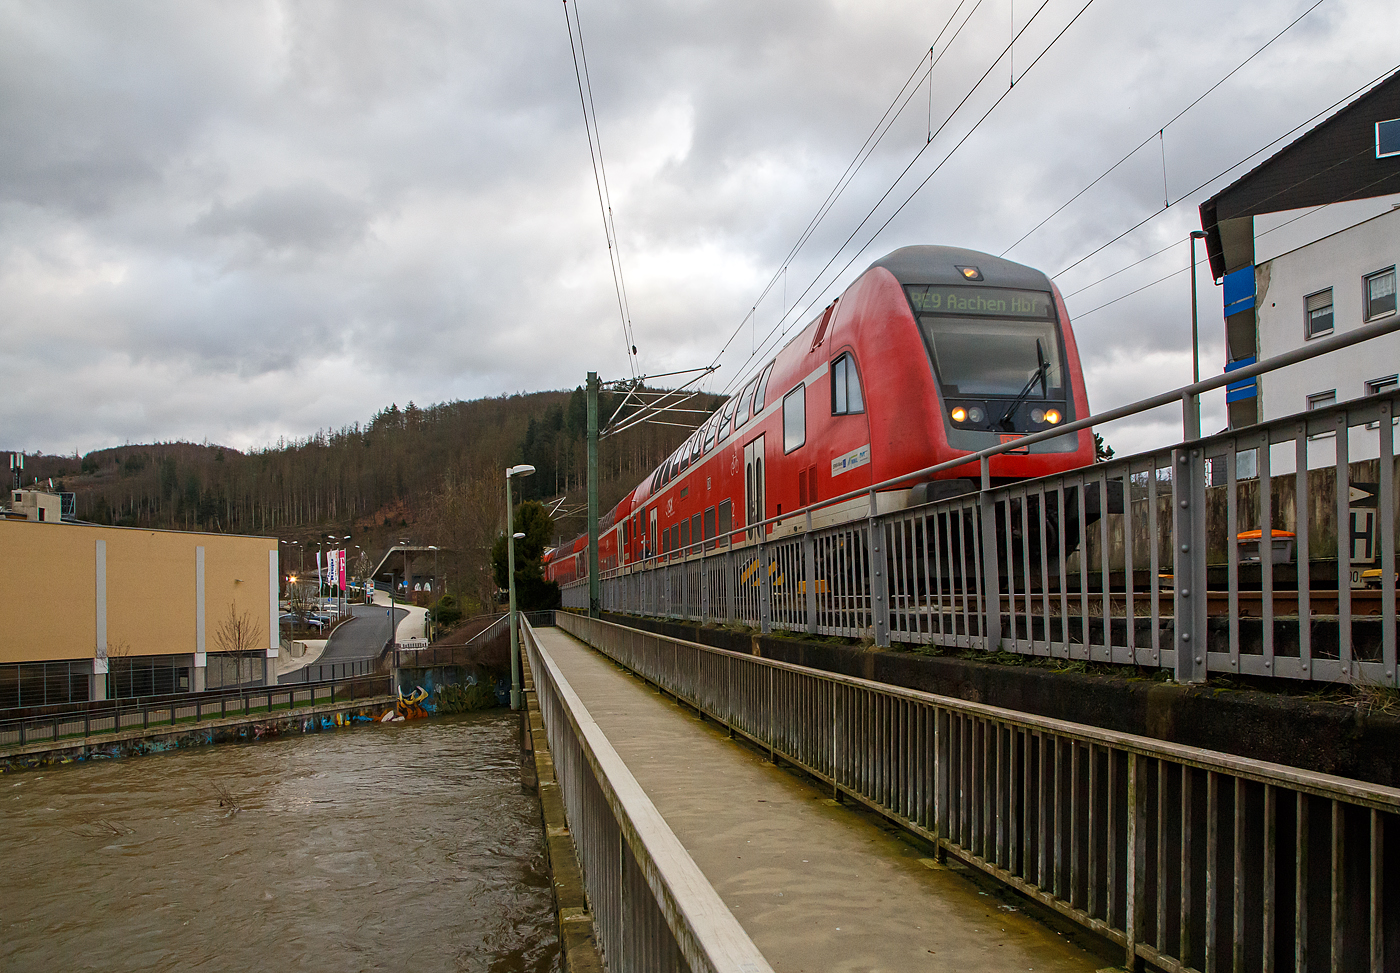 Steuerwagen voraus überquert der RE 9 rsx - Rhein-Sieg-Express (Siegen– Köln - Aachen) am 15.01.2023, die Siegbrücke und erreicht den Bahnhof Betzdorf (Sieg), Schublok war die 146 004-7 (91 80 6146 004-7 D-DB).

Links sieht man die Sieg die z. Z. mächtigen Wassermassen führt, die Hochwassermeldemarke ist schon seit Tagen hier erreicht.
